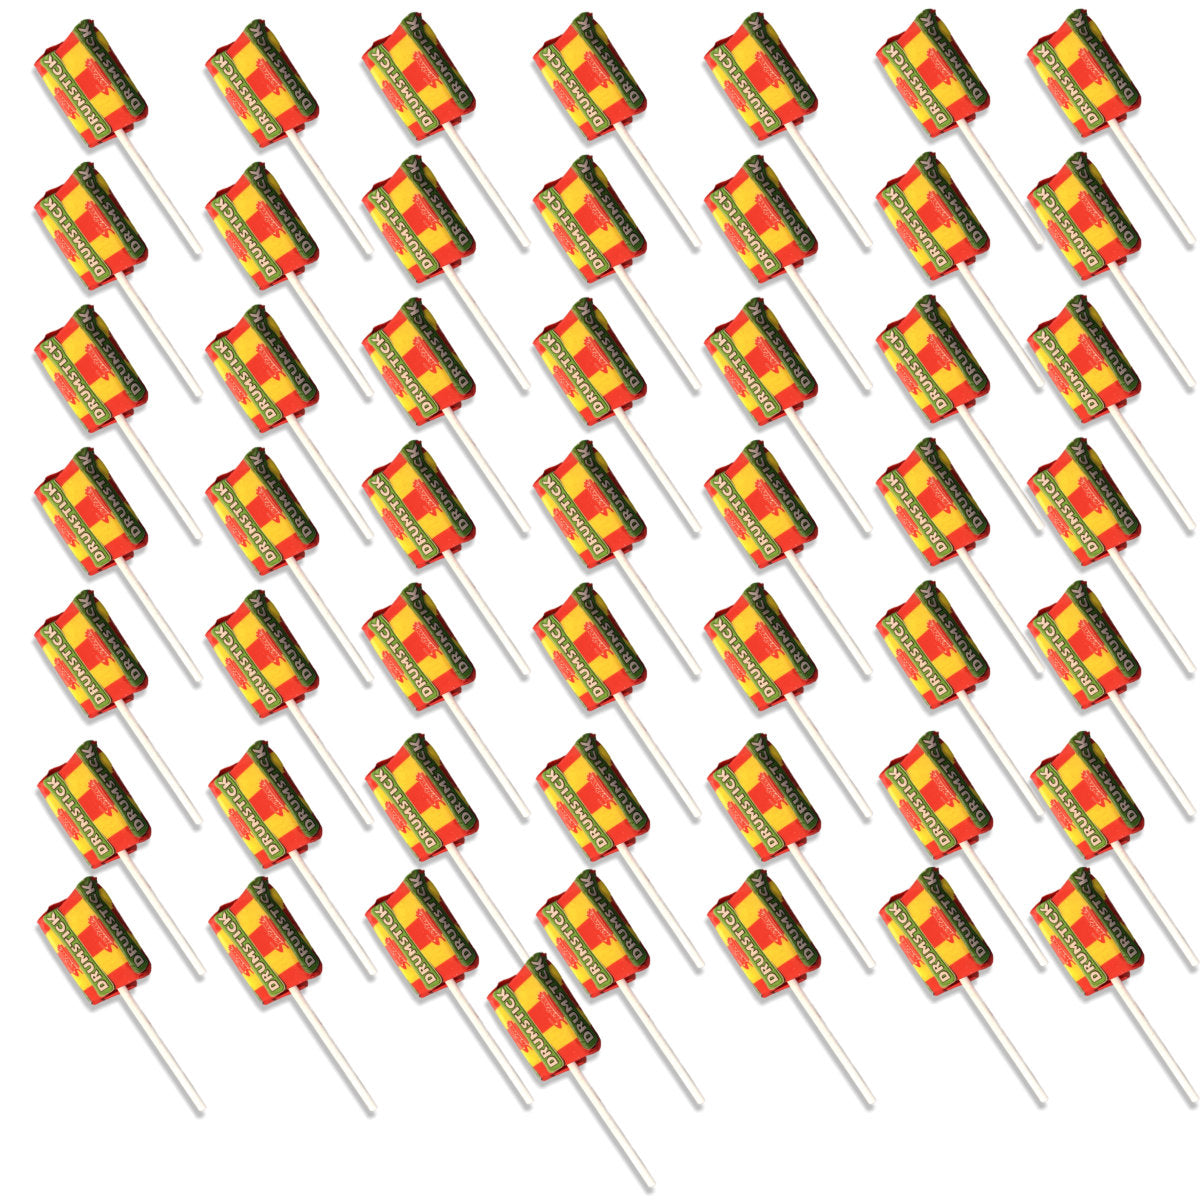 Swizzels Drumstick Lollipops